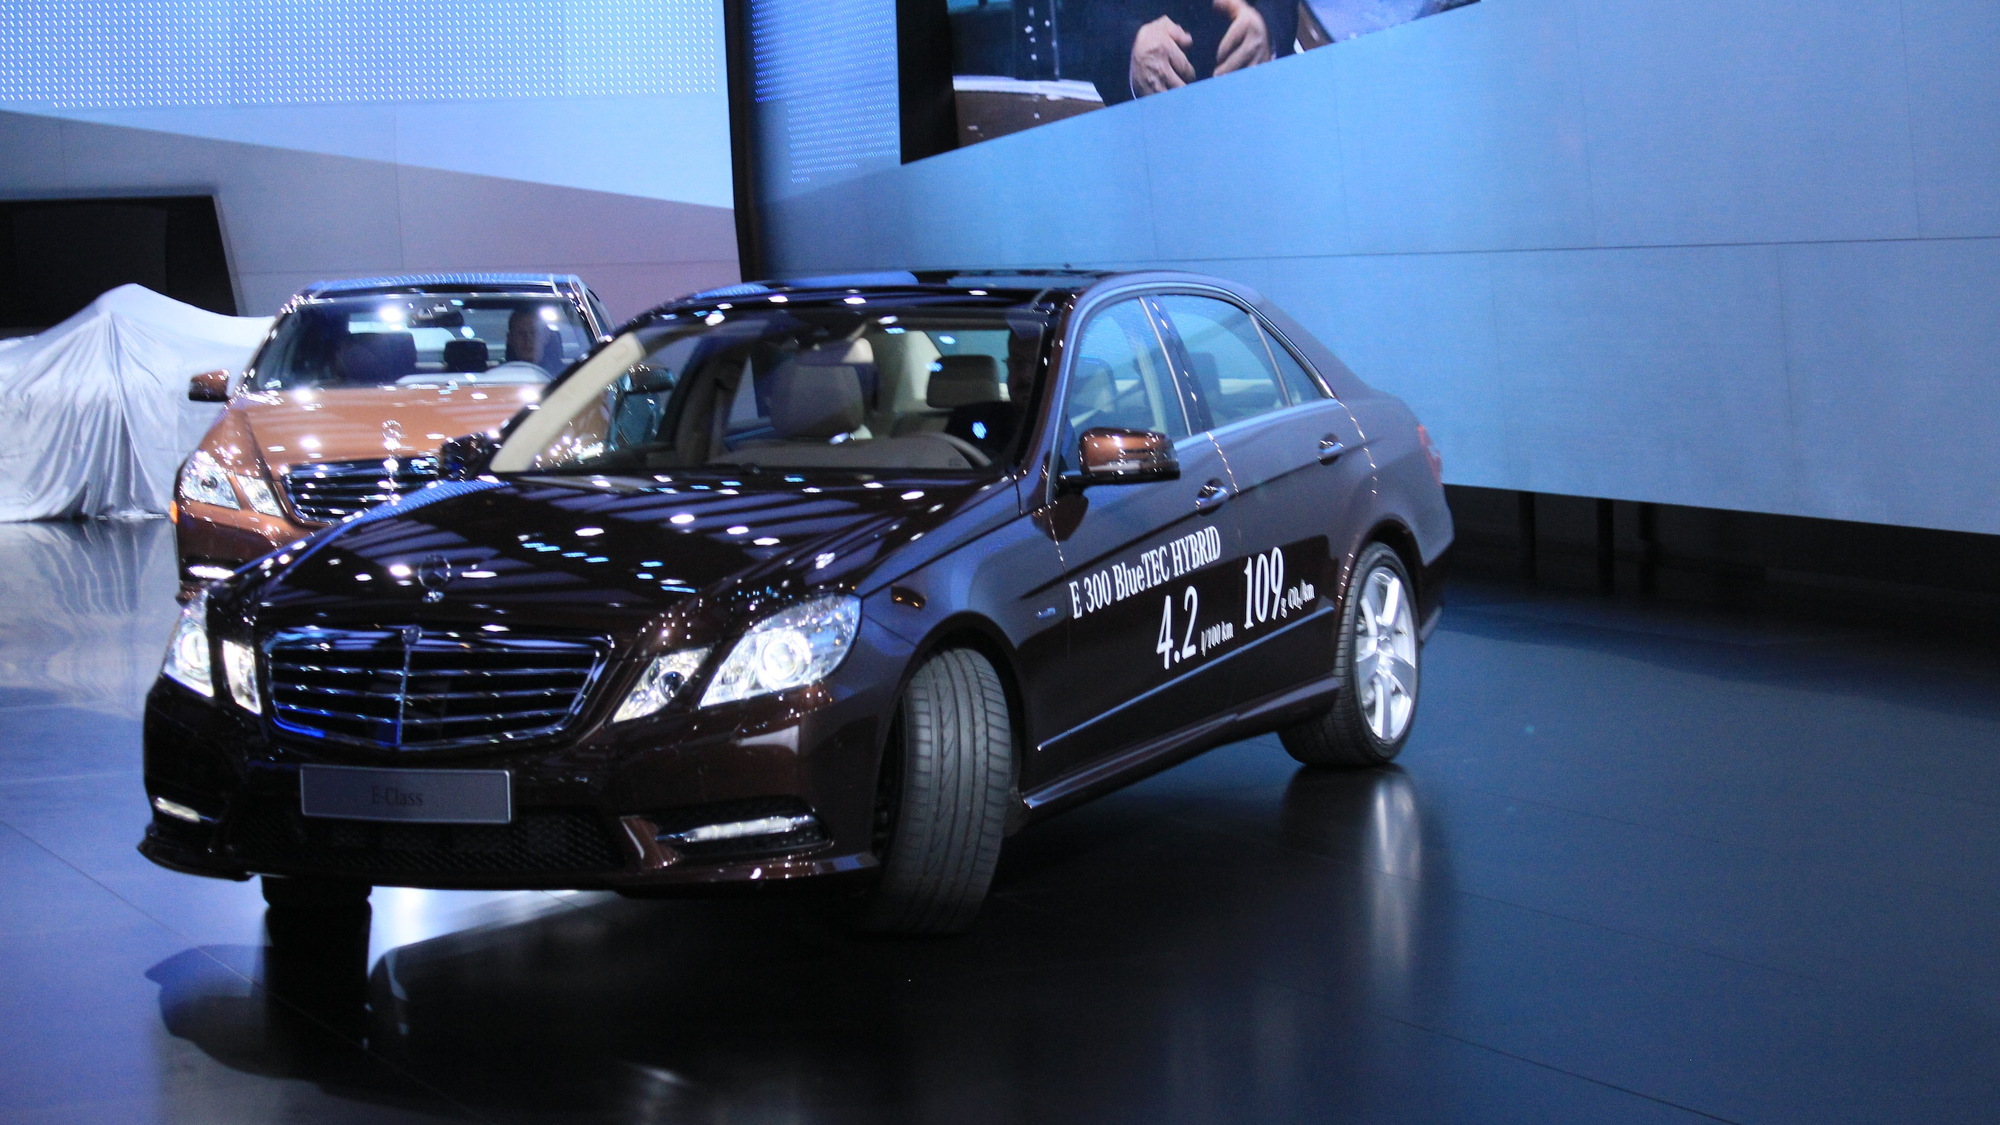 Mercedes-Benz E400 Hybrid and E300 Bluetec Hybrid live photos